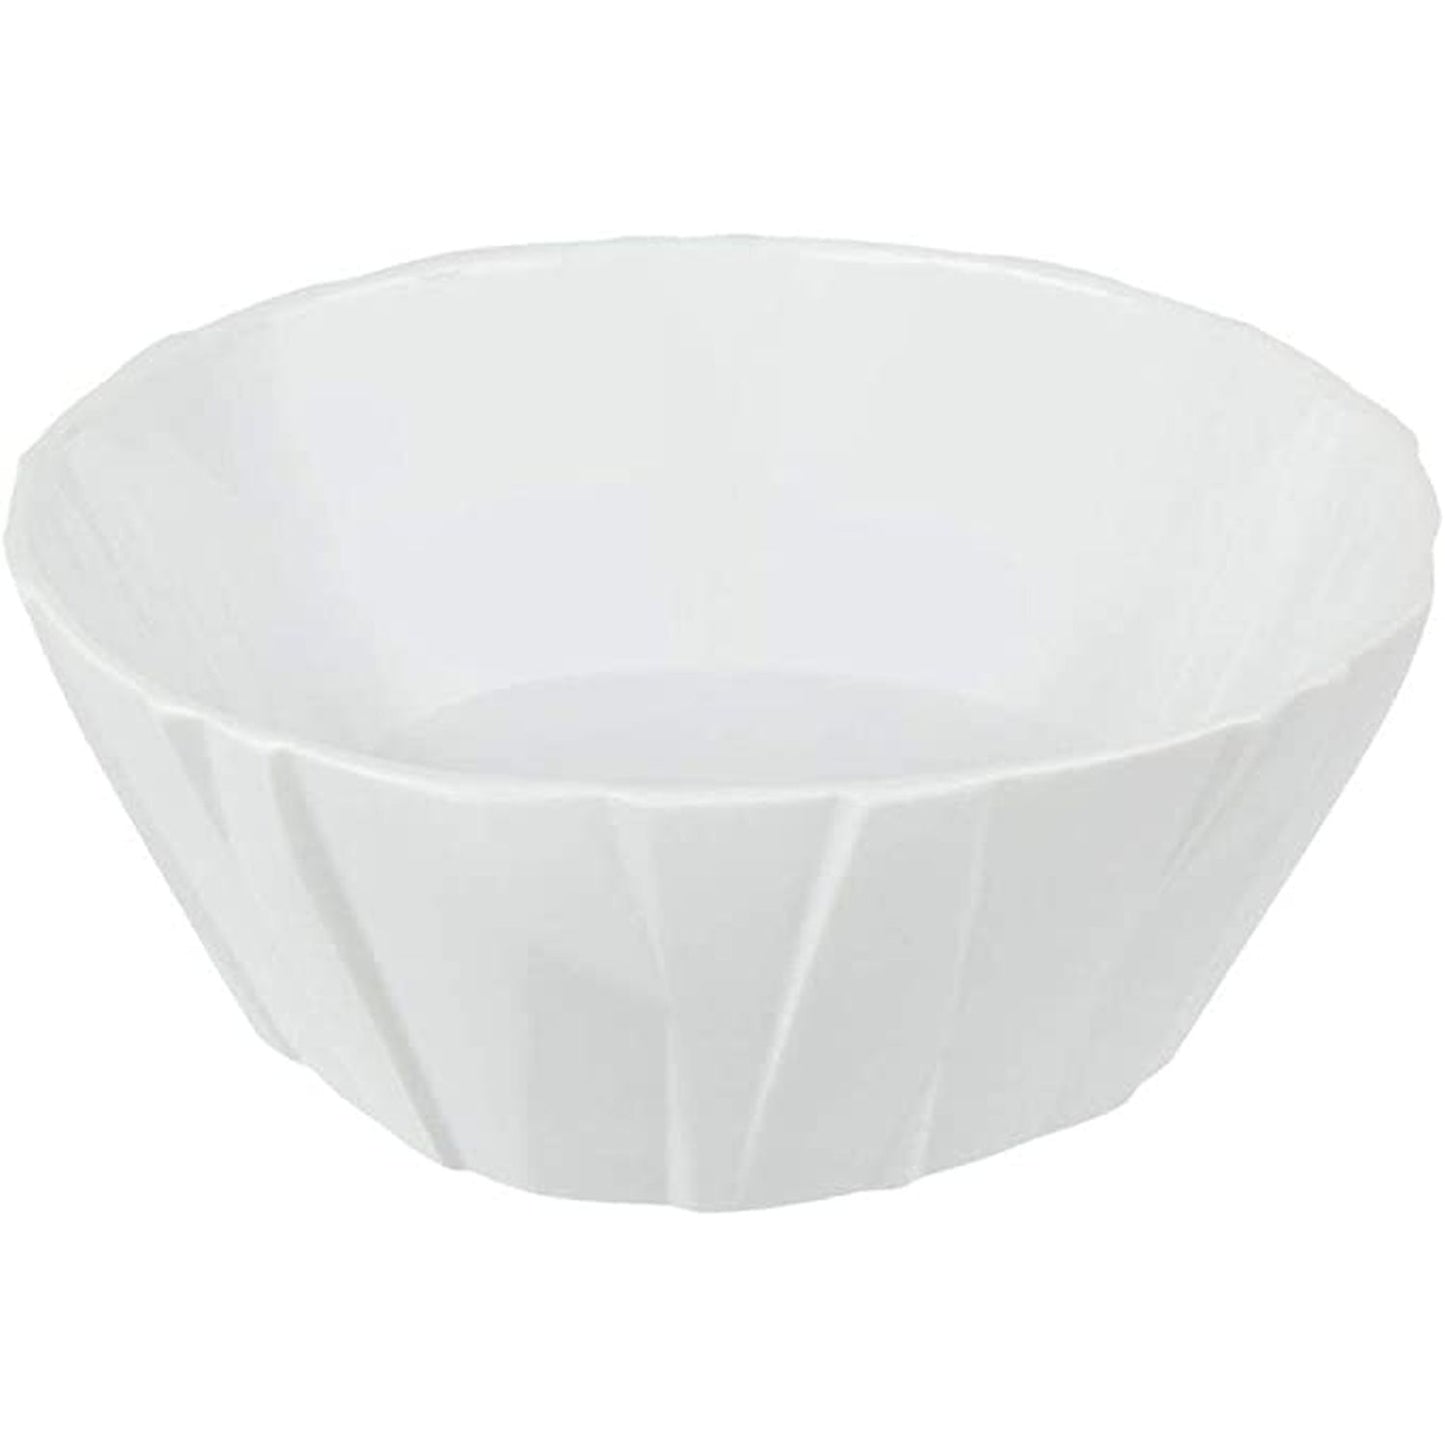 Vista Alegre Matrix White Cereal Bowl, 7"